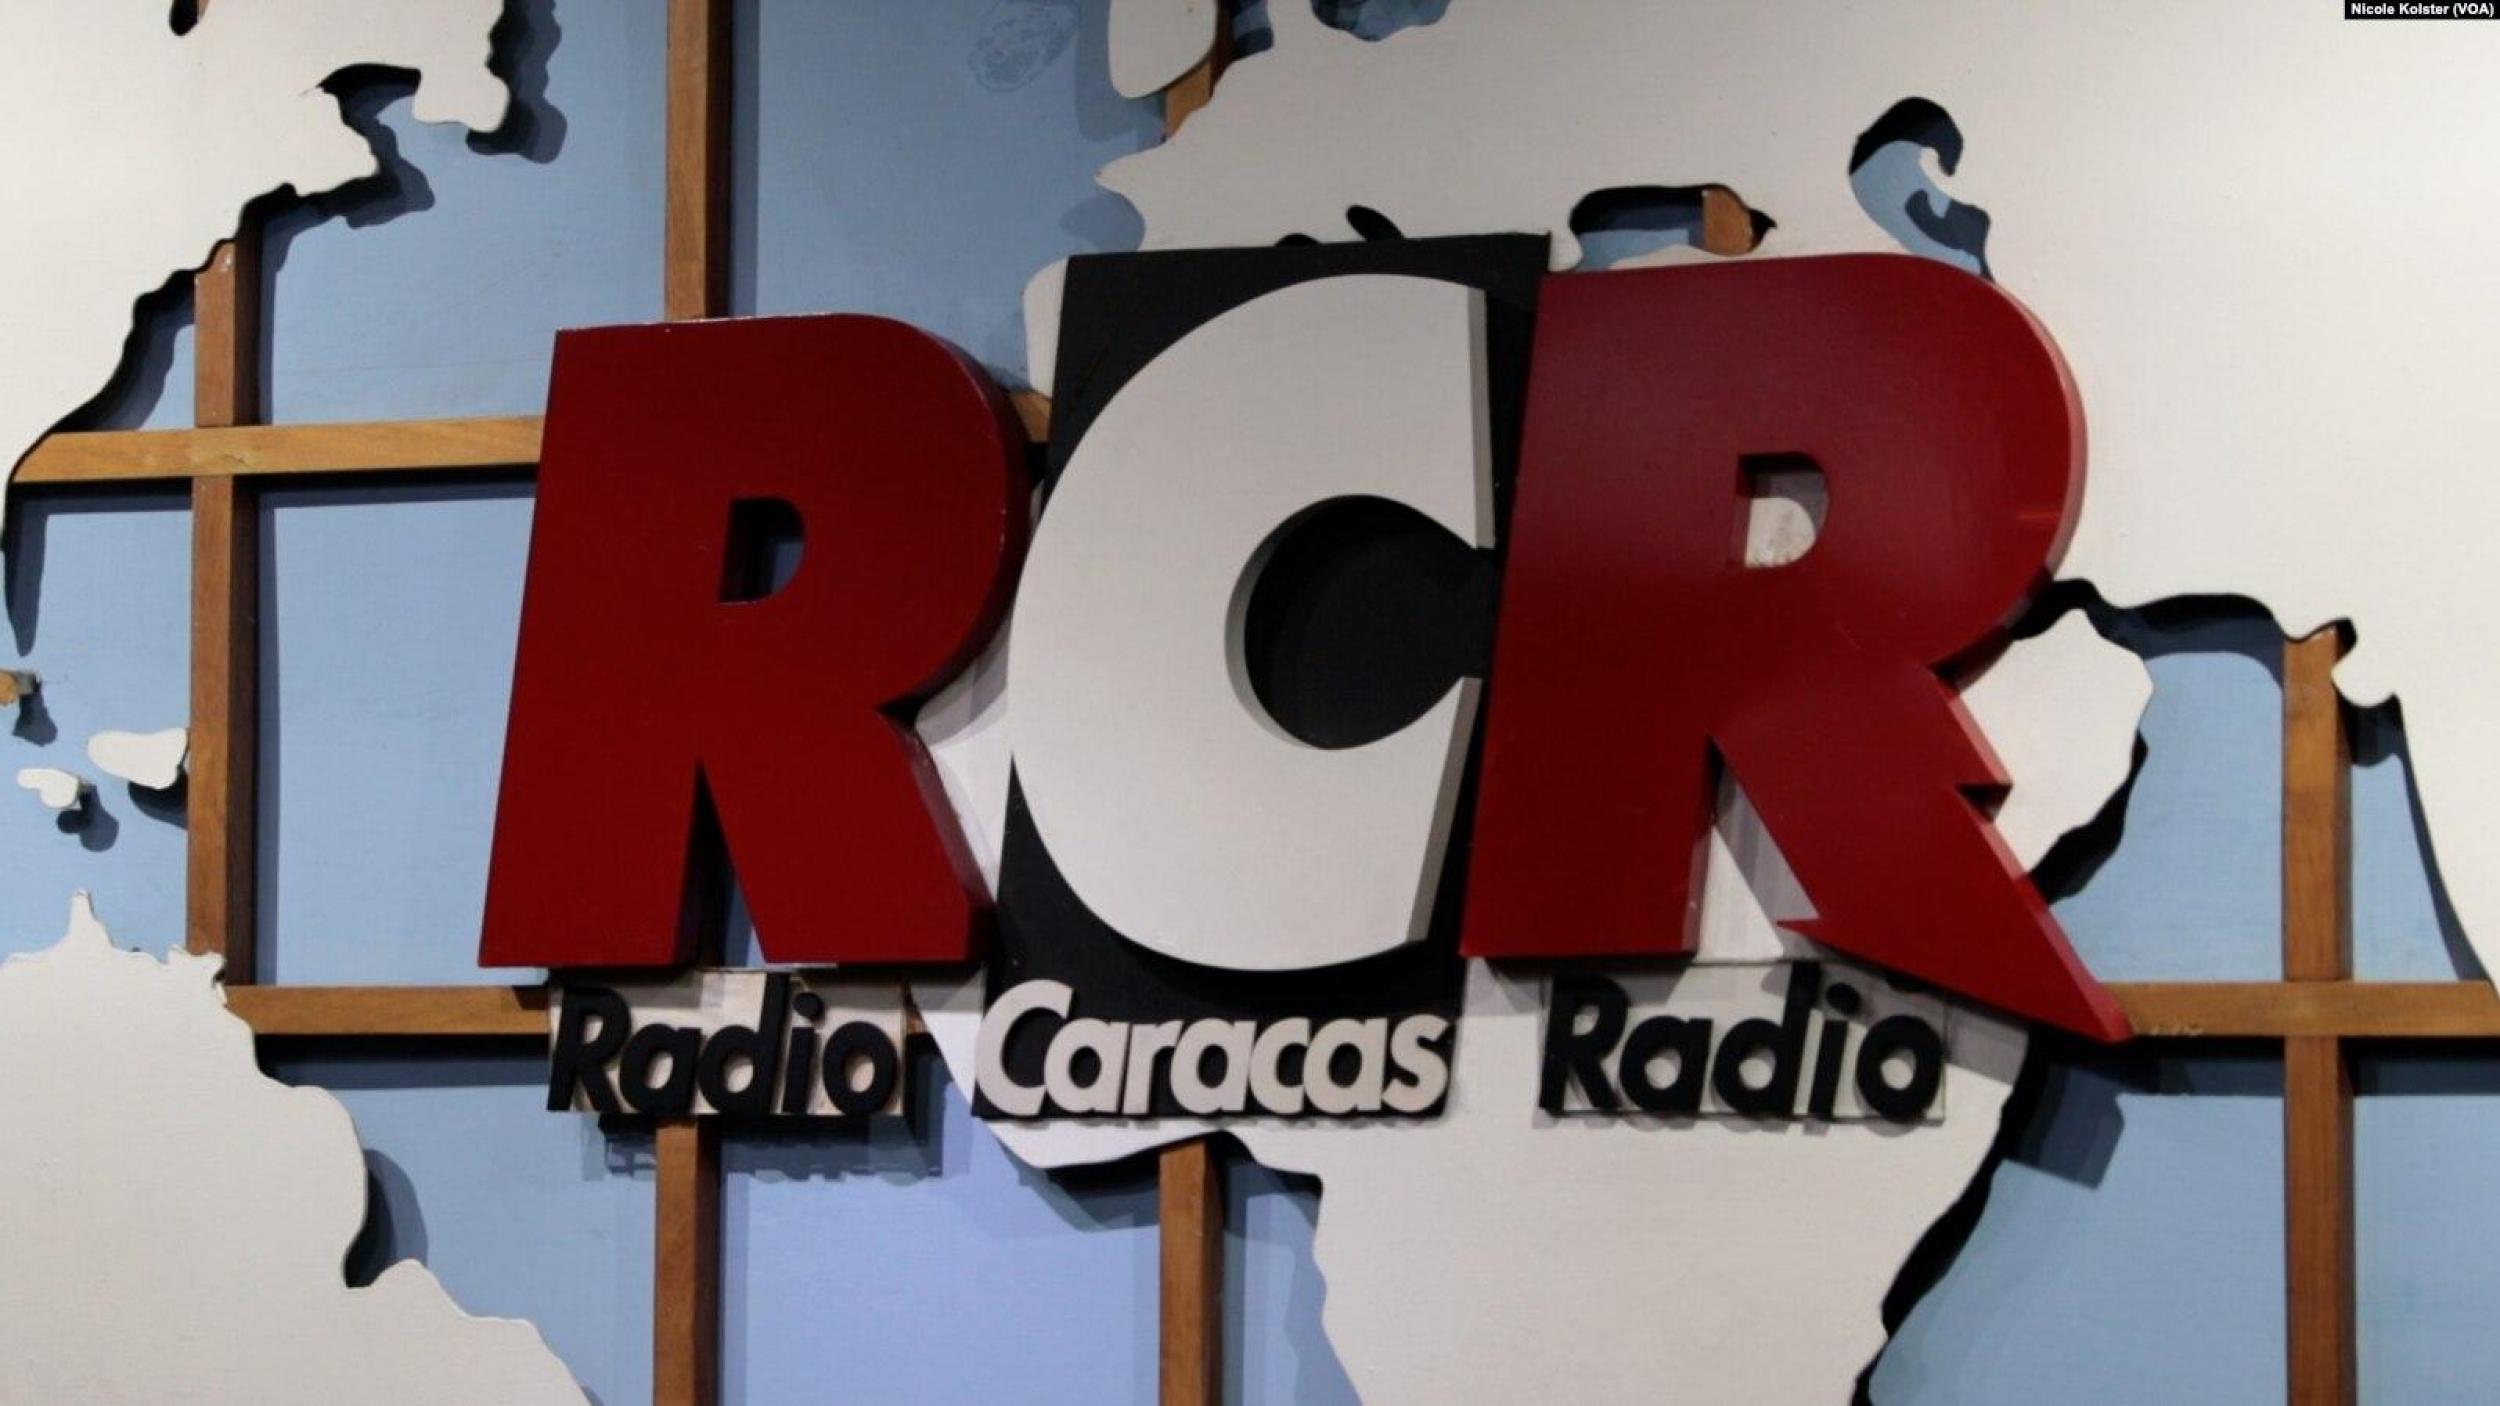 RCR, la radio más antigua de Venezuela se despide de la red social X: Gracias a todos por su apoyo y lealtad